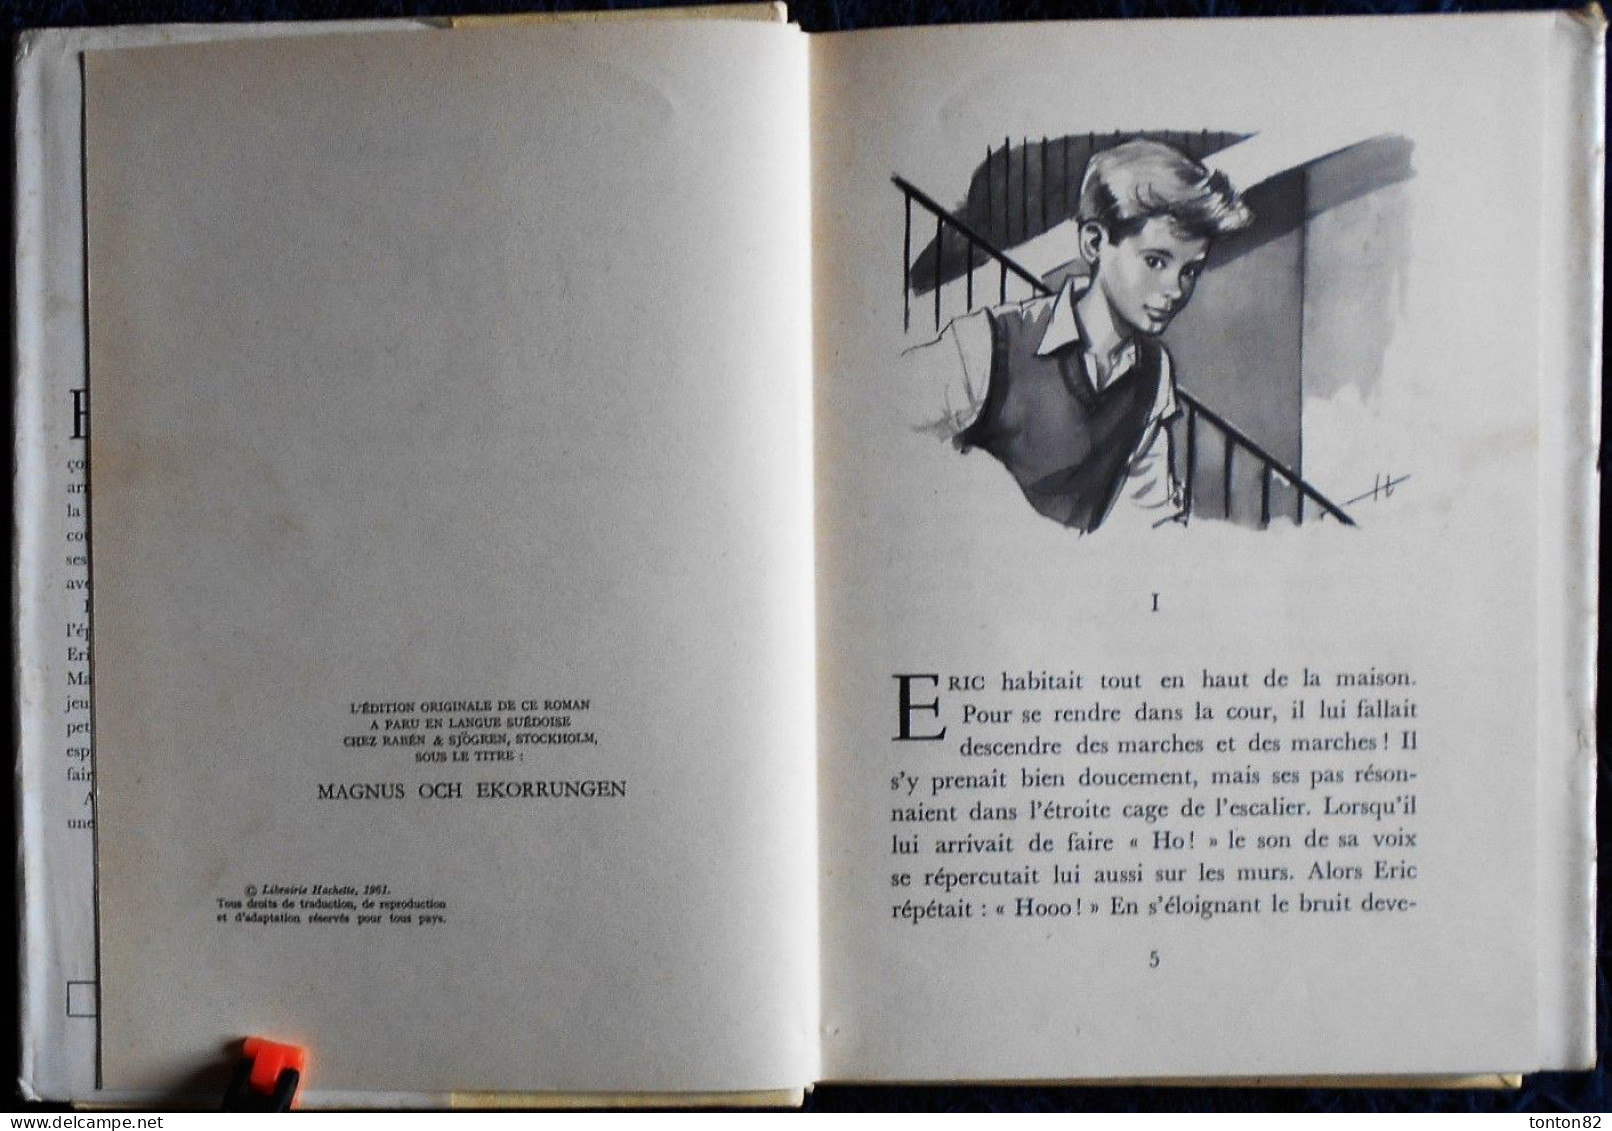 Hans Peterson - ERIC Et L'écureuil - Idéal Bibliothèque  207 - ( 1961 ) . - Ideal Bibliotheque